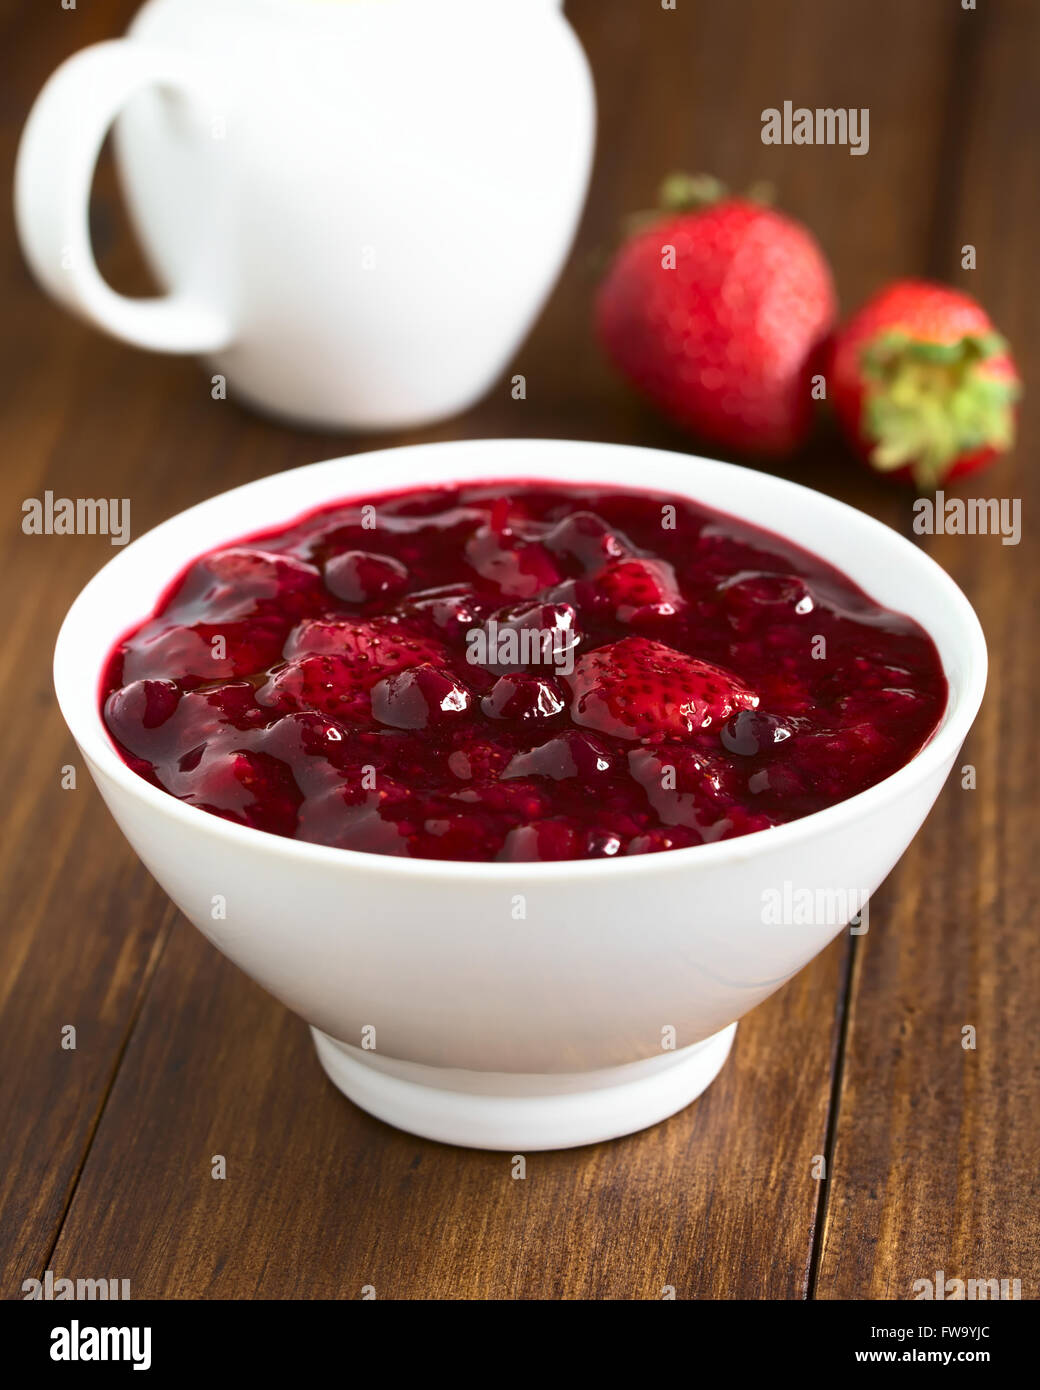 Rote Gruetze (allemand) de gruau rouge red berry pudding à base de fraise, de bleuet, de framboise et de groseille rouge Banque D'Images